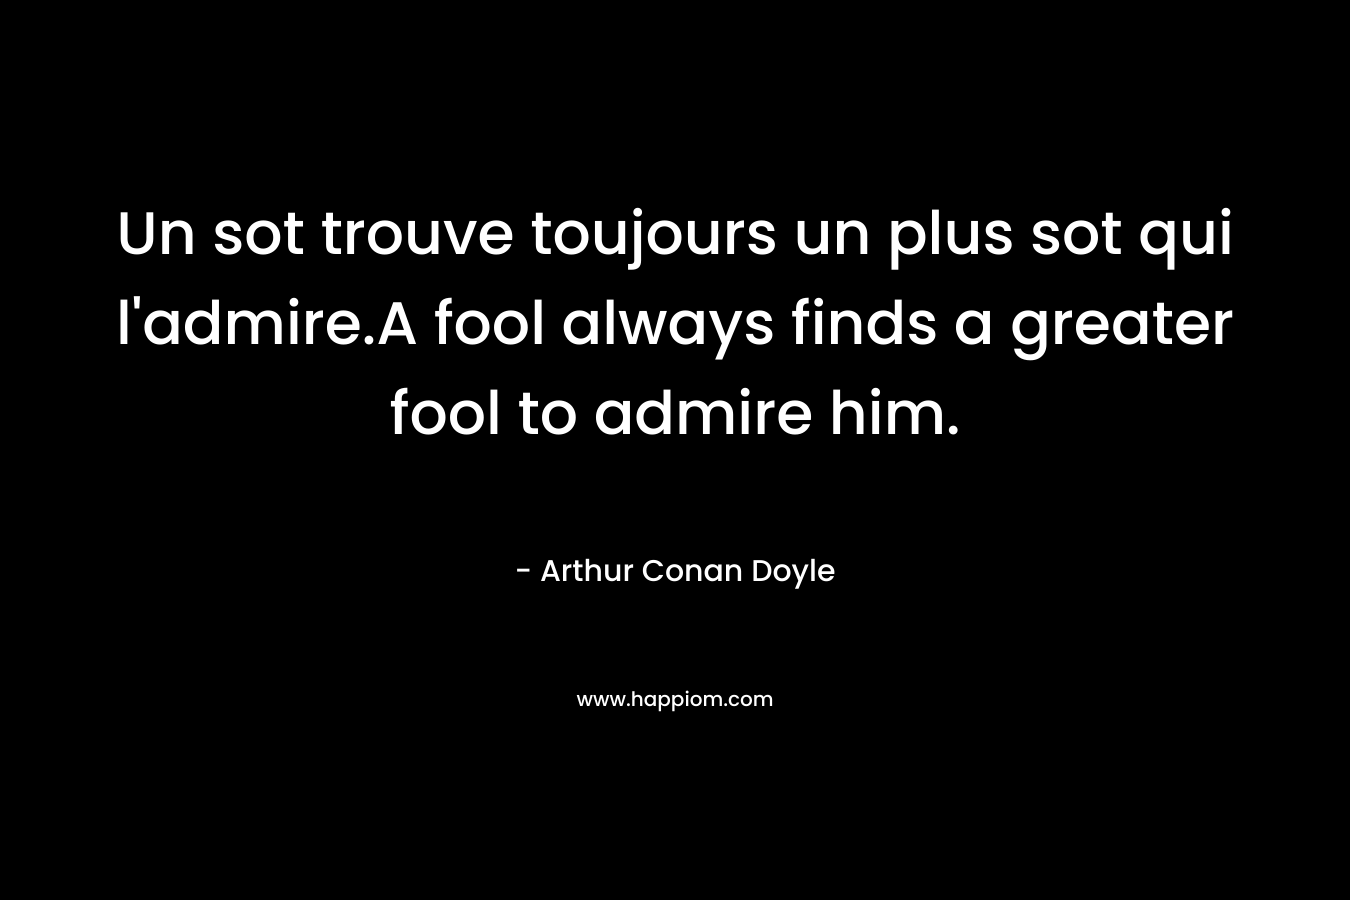 Un sot trouve toujours un plus sot qui l’admire.A fool always finds a greater fool to admire him. – Arthur Conan Doyle